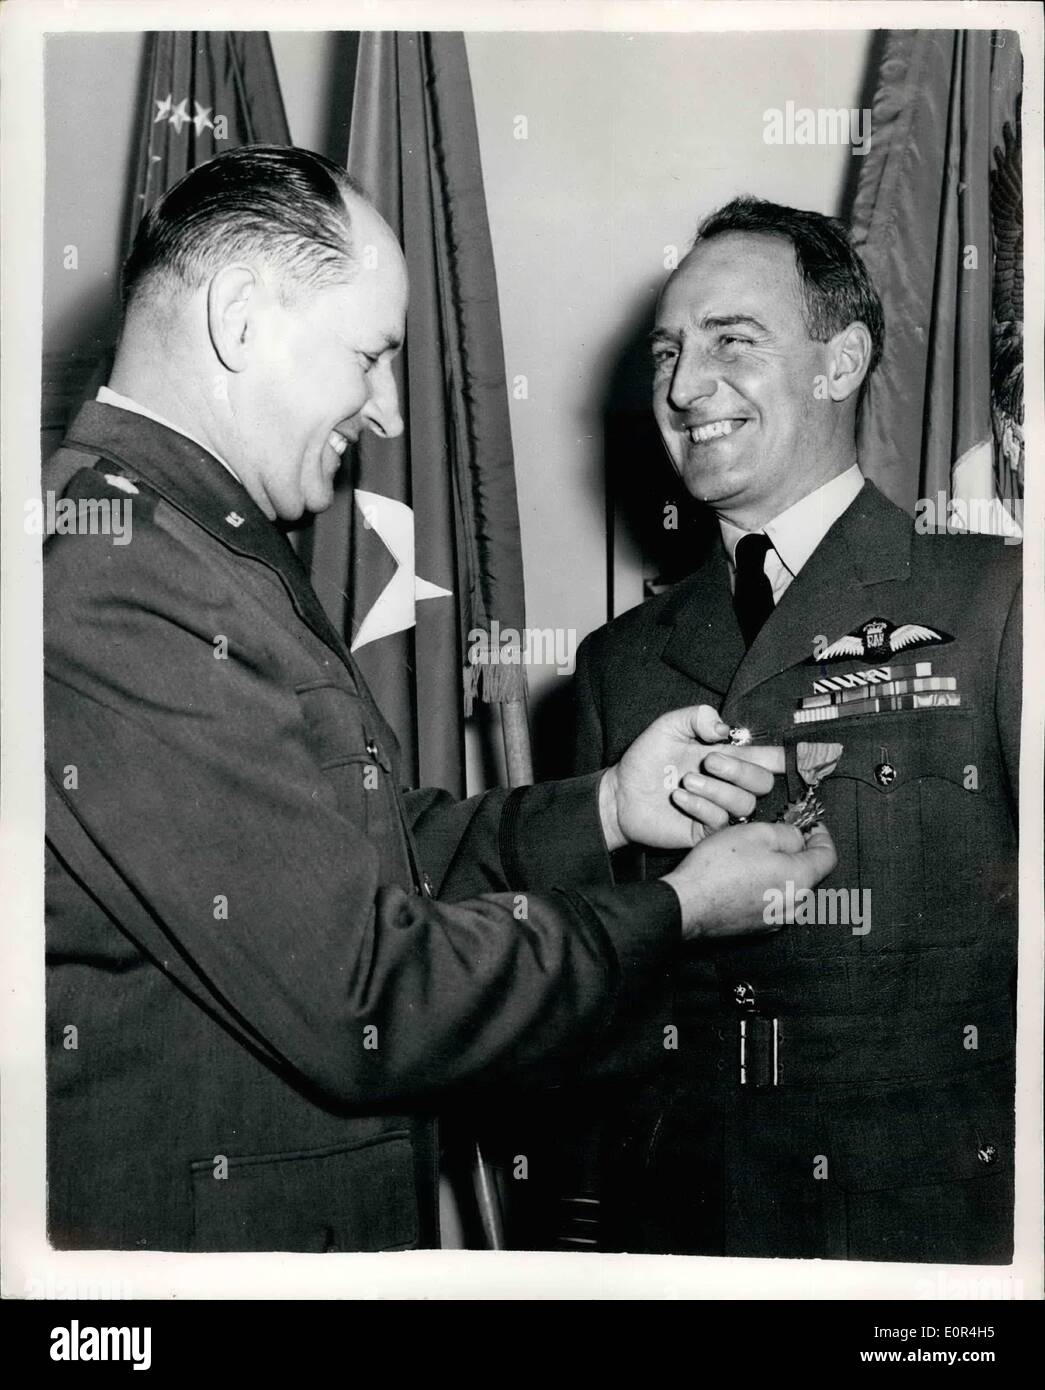 03 marzo 1958 - R.A.F. L'ufficiale riceve il premio della medaglia aerea degli Stati Uniti.: Squadron leader Colin L. Blythe D.F.C., A.F.C., R.A.F. questo pomeriggio ha ricevuto la medaglia aerea degli Stati Uniti da Briga. Il Gen. Frank B. James, United States Air Attache - presso l'ufficio londinese di quest'ultimo. Il premio è stato assegnato a . Gli atti di Blythe di meritorio servizio durante le attività delle Nazioni Unite in Corea da marzo ad agosto 1951. A quel tempo il SDR. LDR. Serviva con No. 77 SQD. Royal Australian Air Force attaccato al 5. USA Air Force, comando delle Nazioni Unite. Nella foto è mostrato Colin I. Blythe, D.F.C. Foto Stock